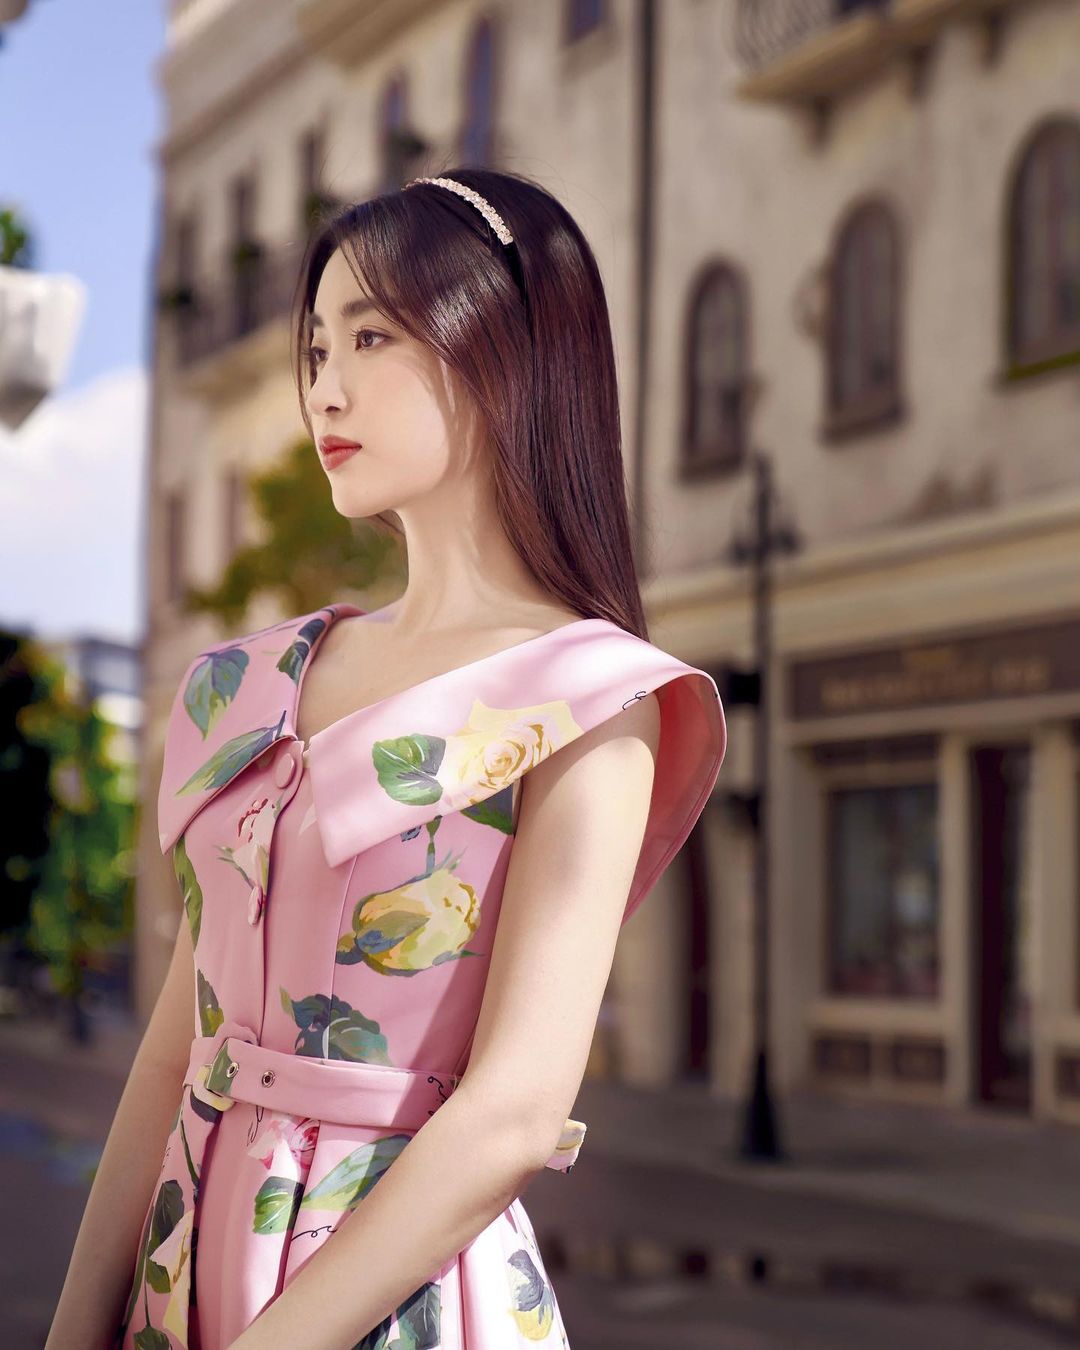 Đỗ Mỹ Linh tung ảnh mới, netizen bình luận: Có duyên nhất trong các Hoa hậu - Ảnh 6